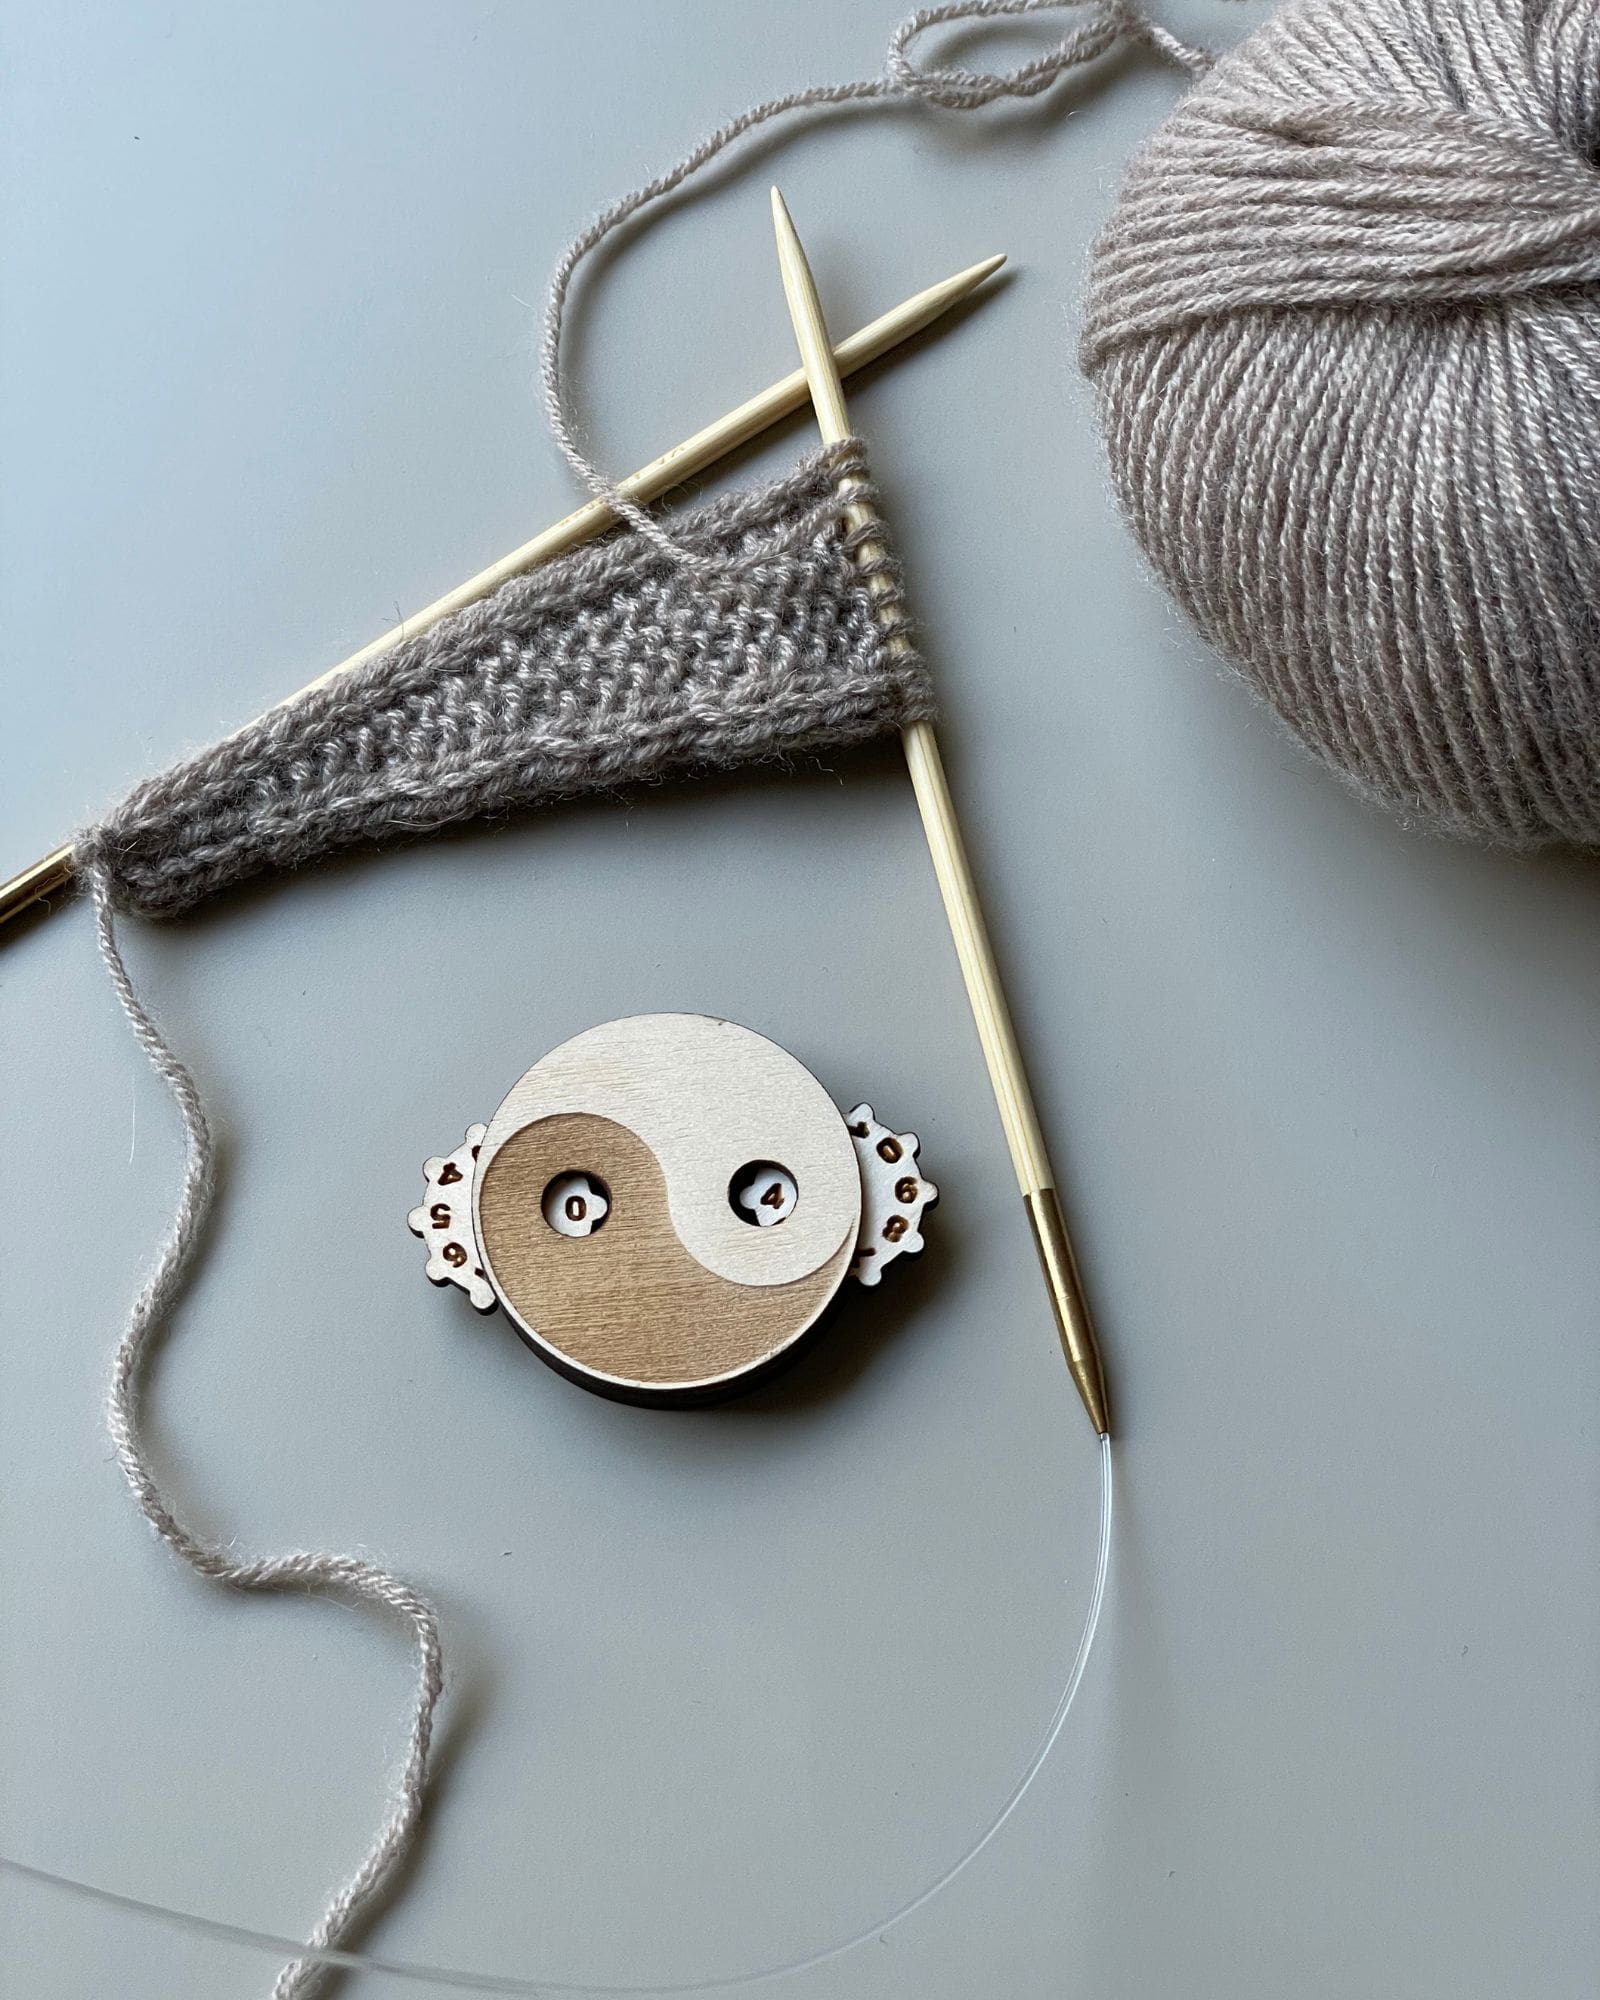 knitting-row-counter-ying-yang-5